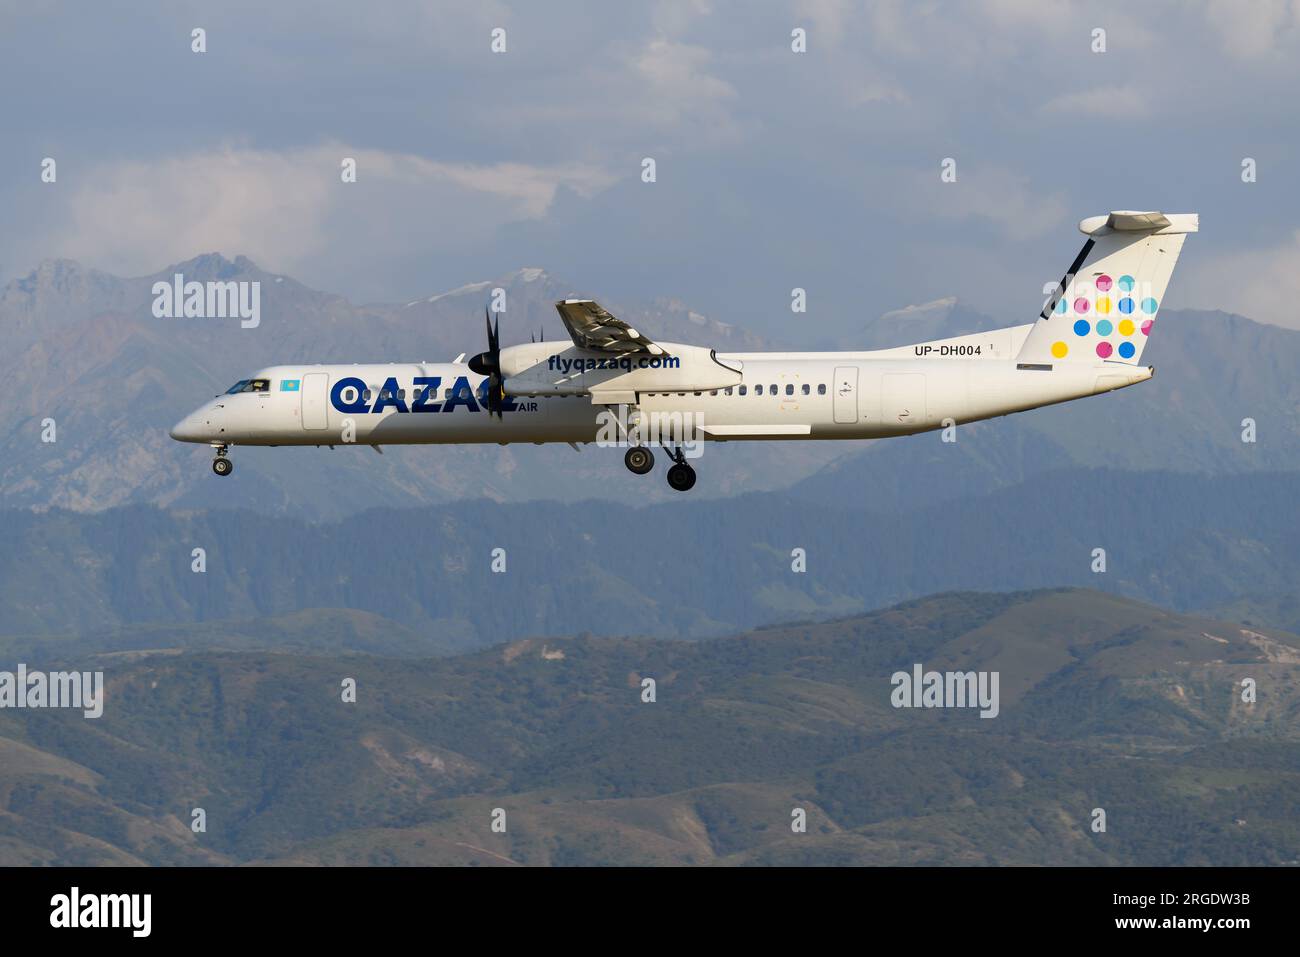 Qazar Air De Havilland Canada Dash 8-400 airplane landing at Almaty Airport in Kazakhstan. Airline QazarAir Bombardier Q400 aircraft. Stock Photo